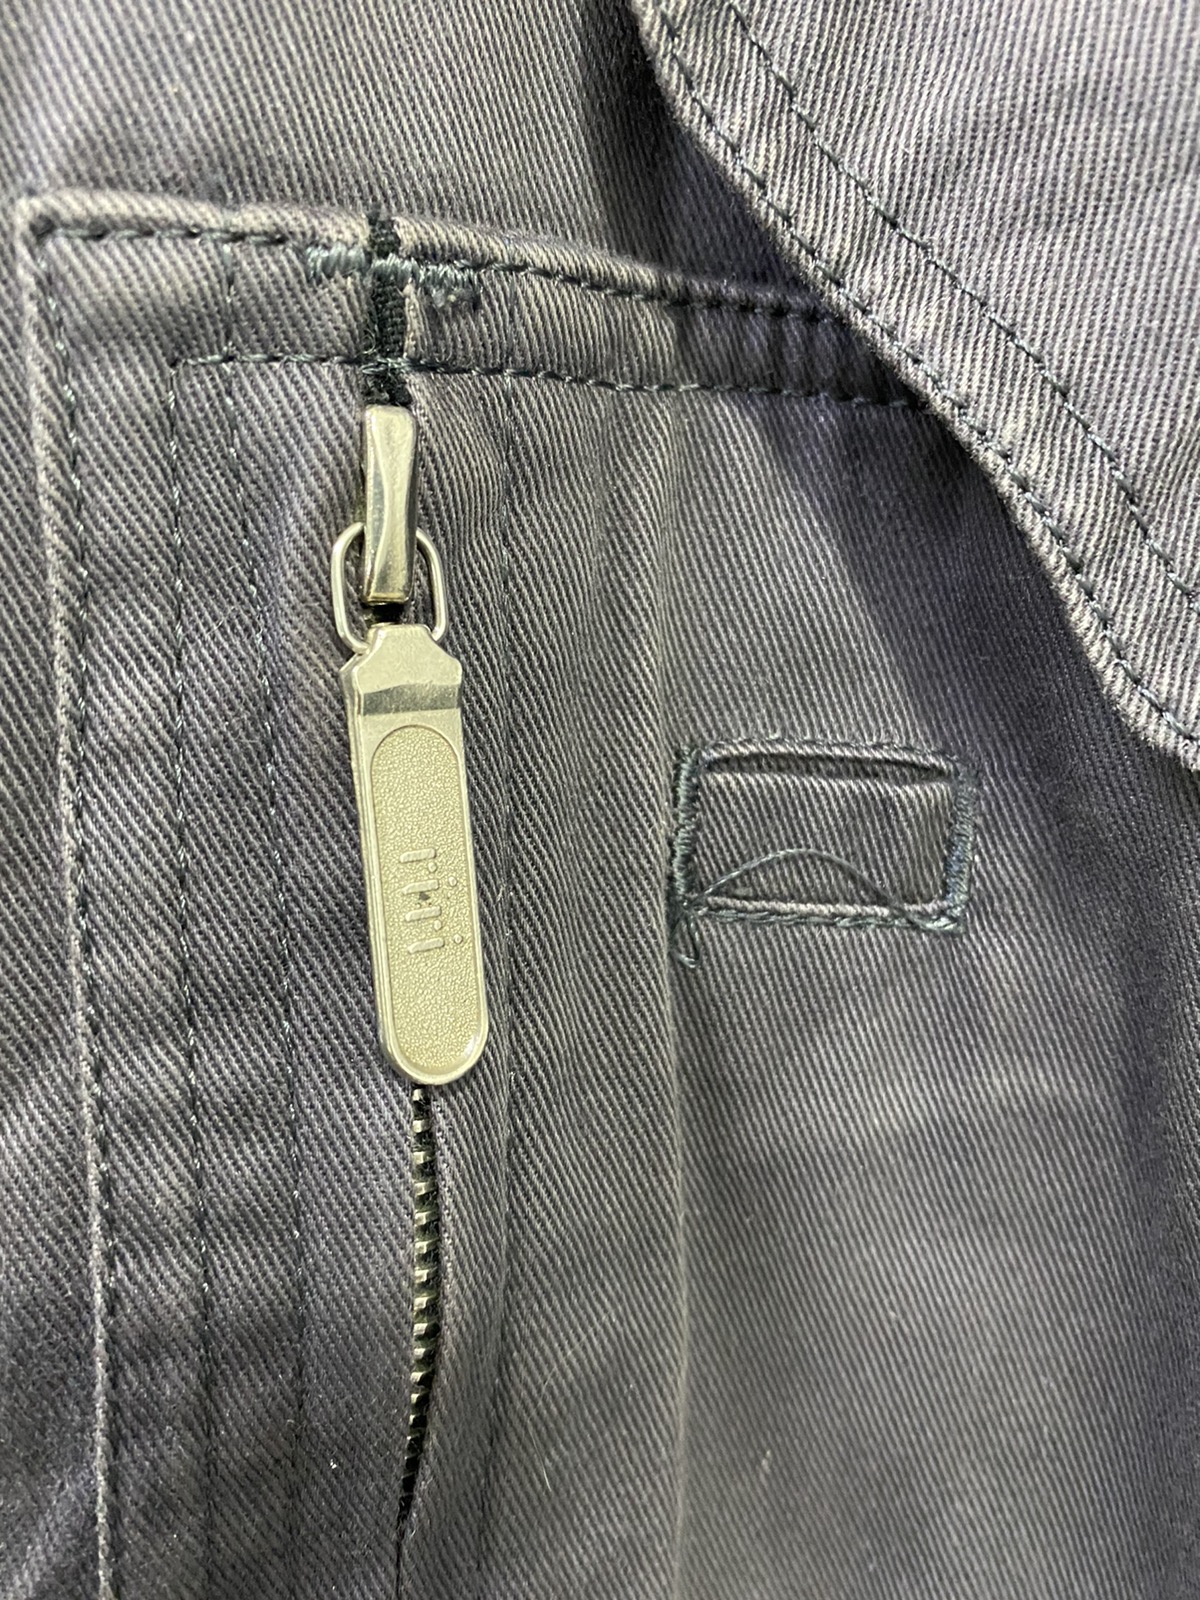 Nigel Cabourn Jacket Harrington Jacket Design Quilted Inner - 5